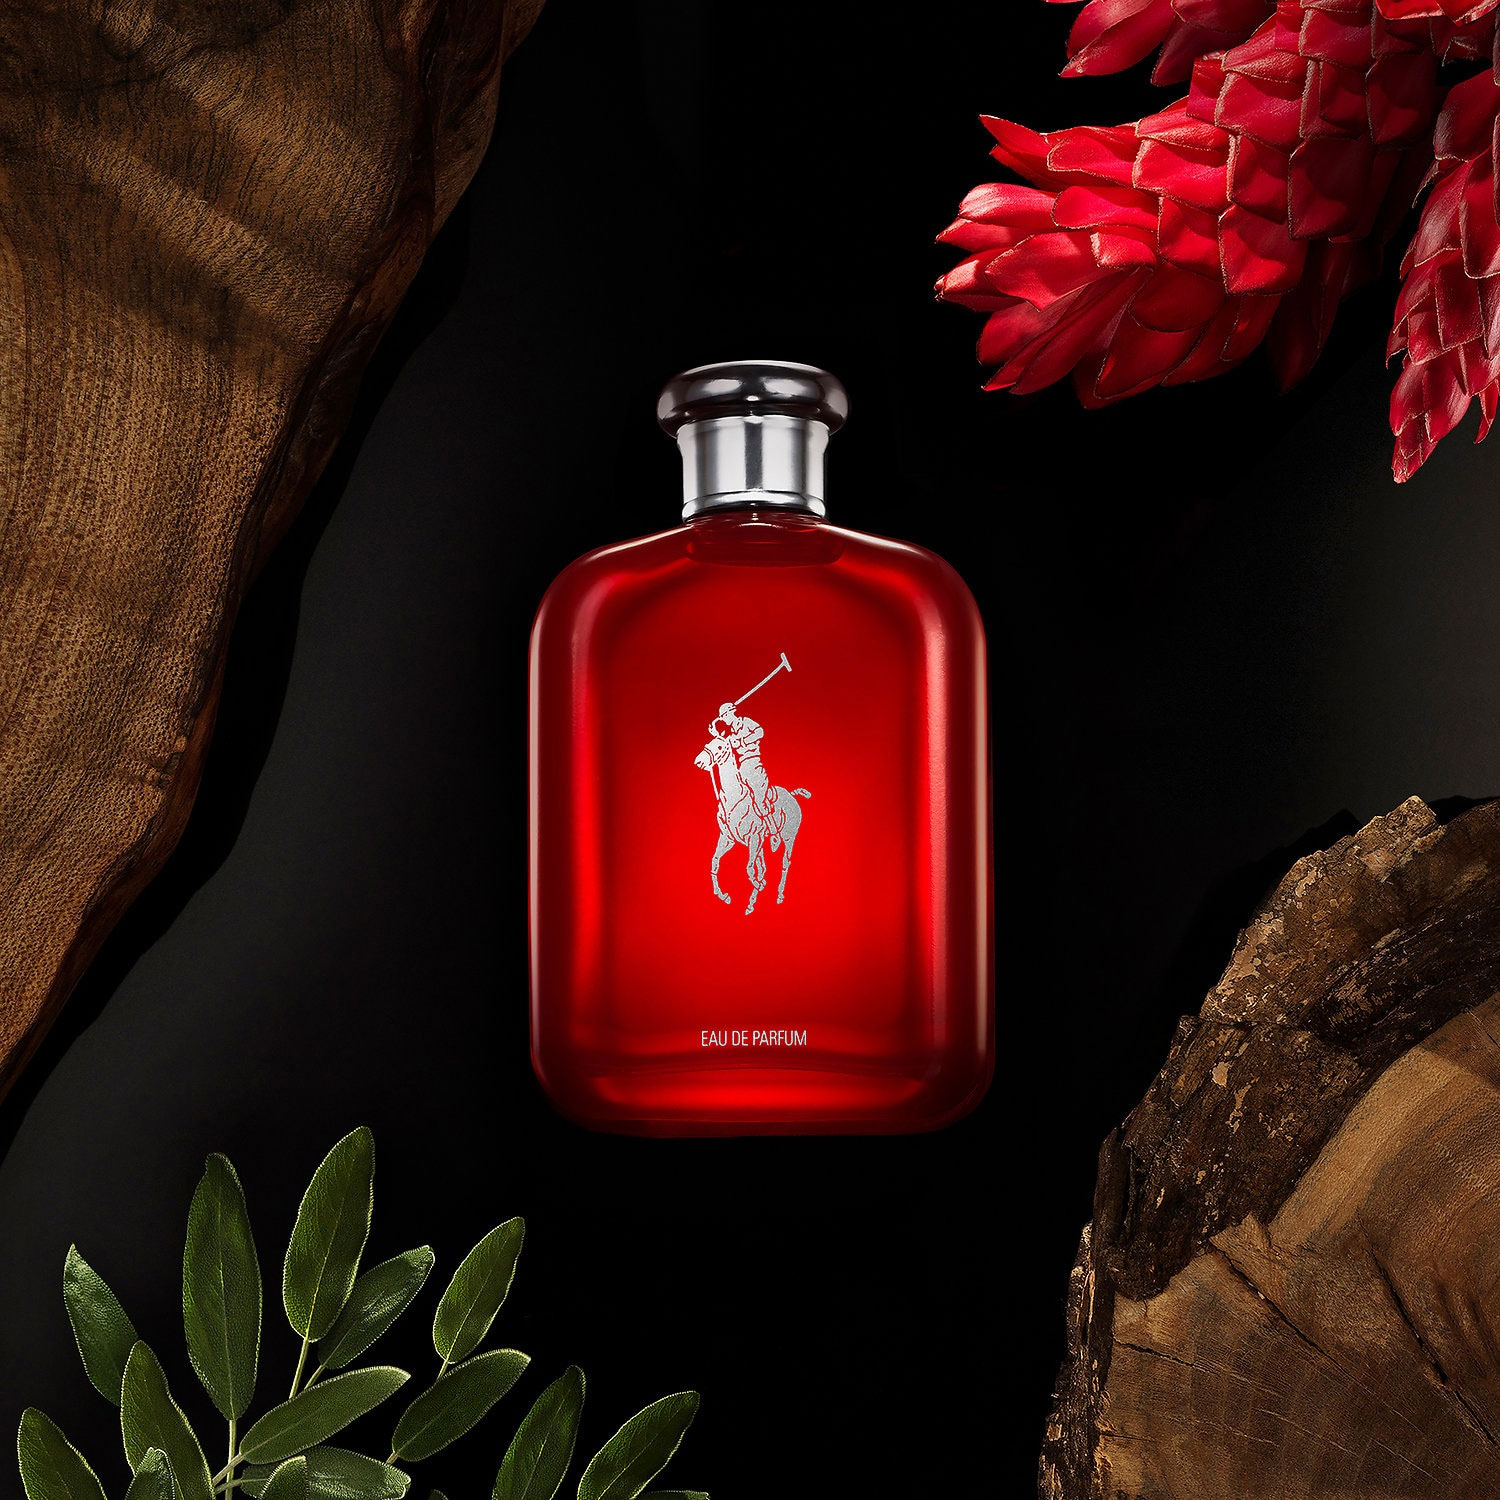 Ralph Lauren Polo Red Eau de Parfum Perfume Ad